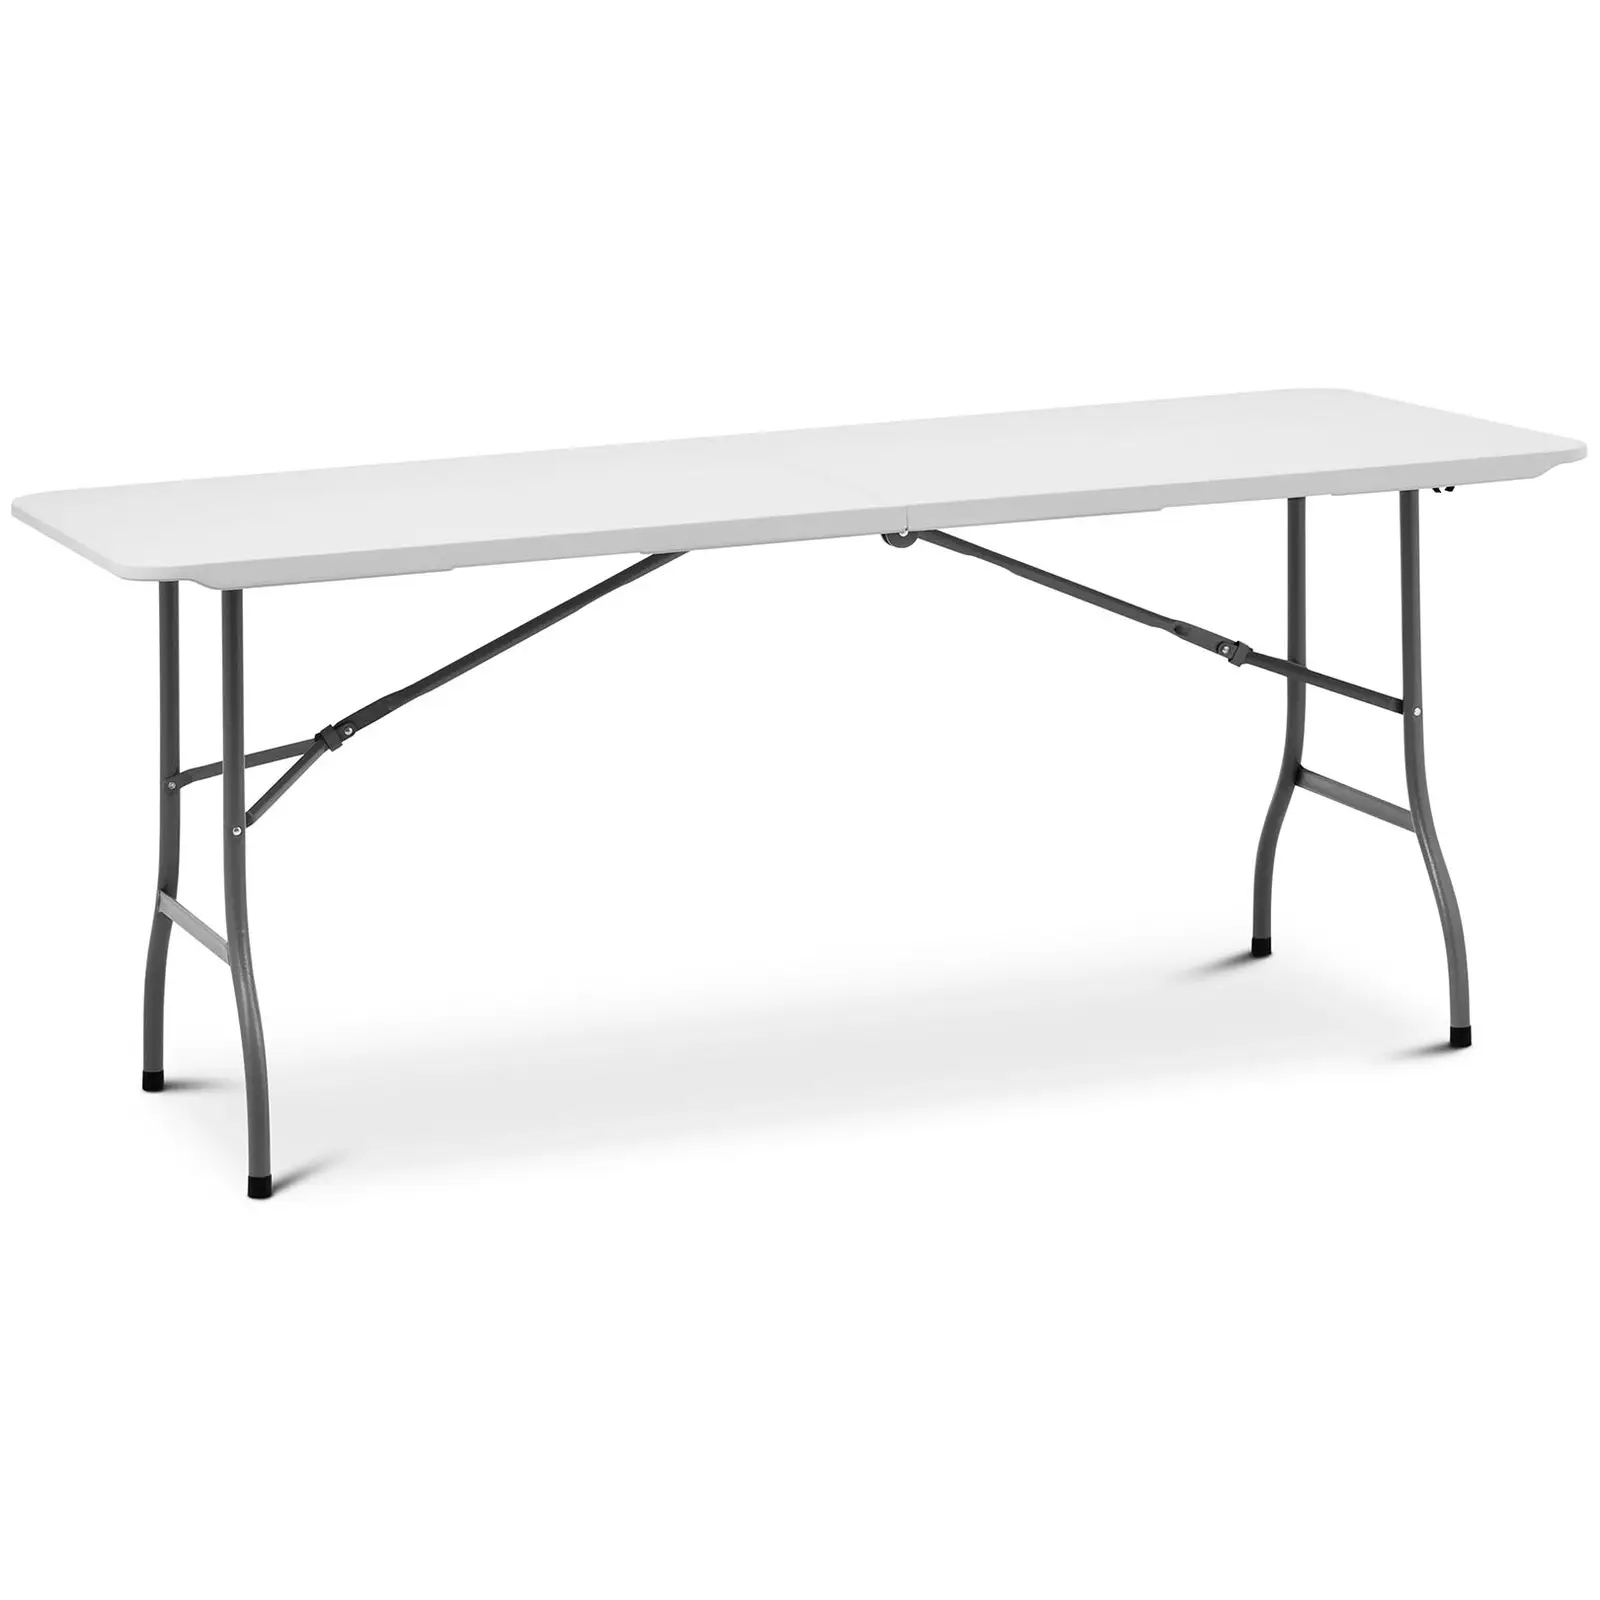 Table pliante - 1 800 x 750 x 740 mm - Royal Catering - 150 kg - Intérieur/extérieur - Blanche